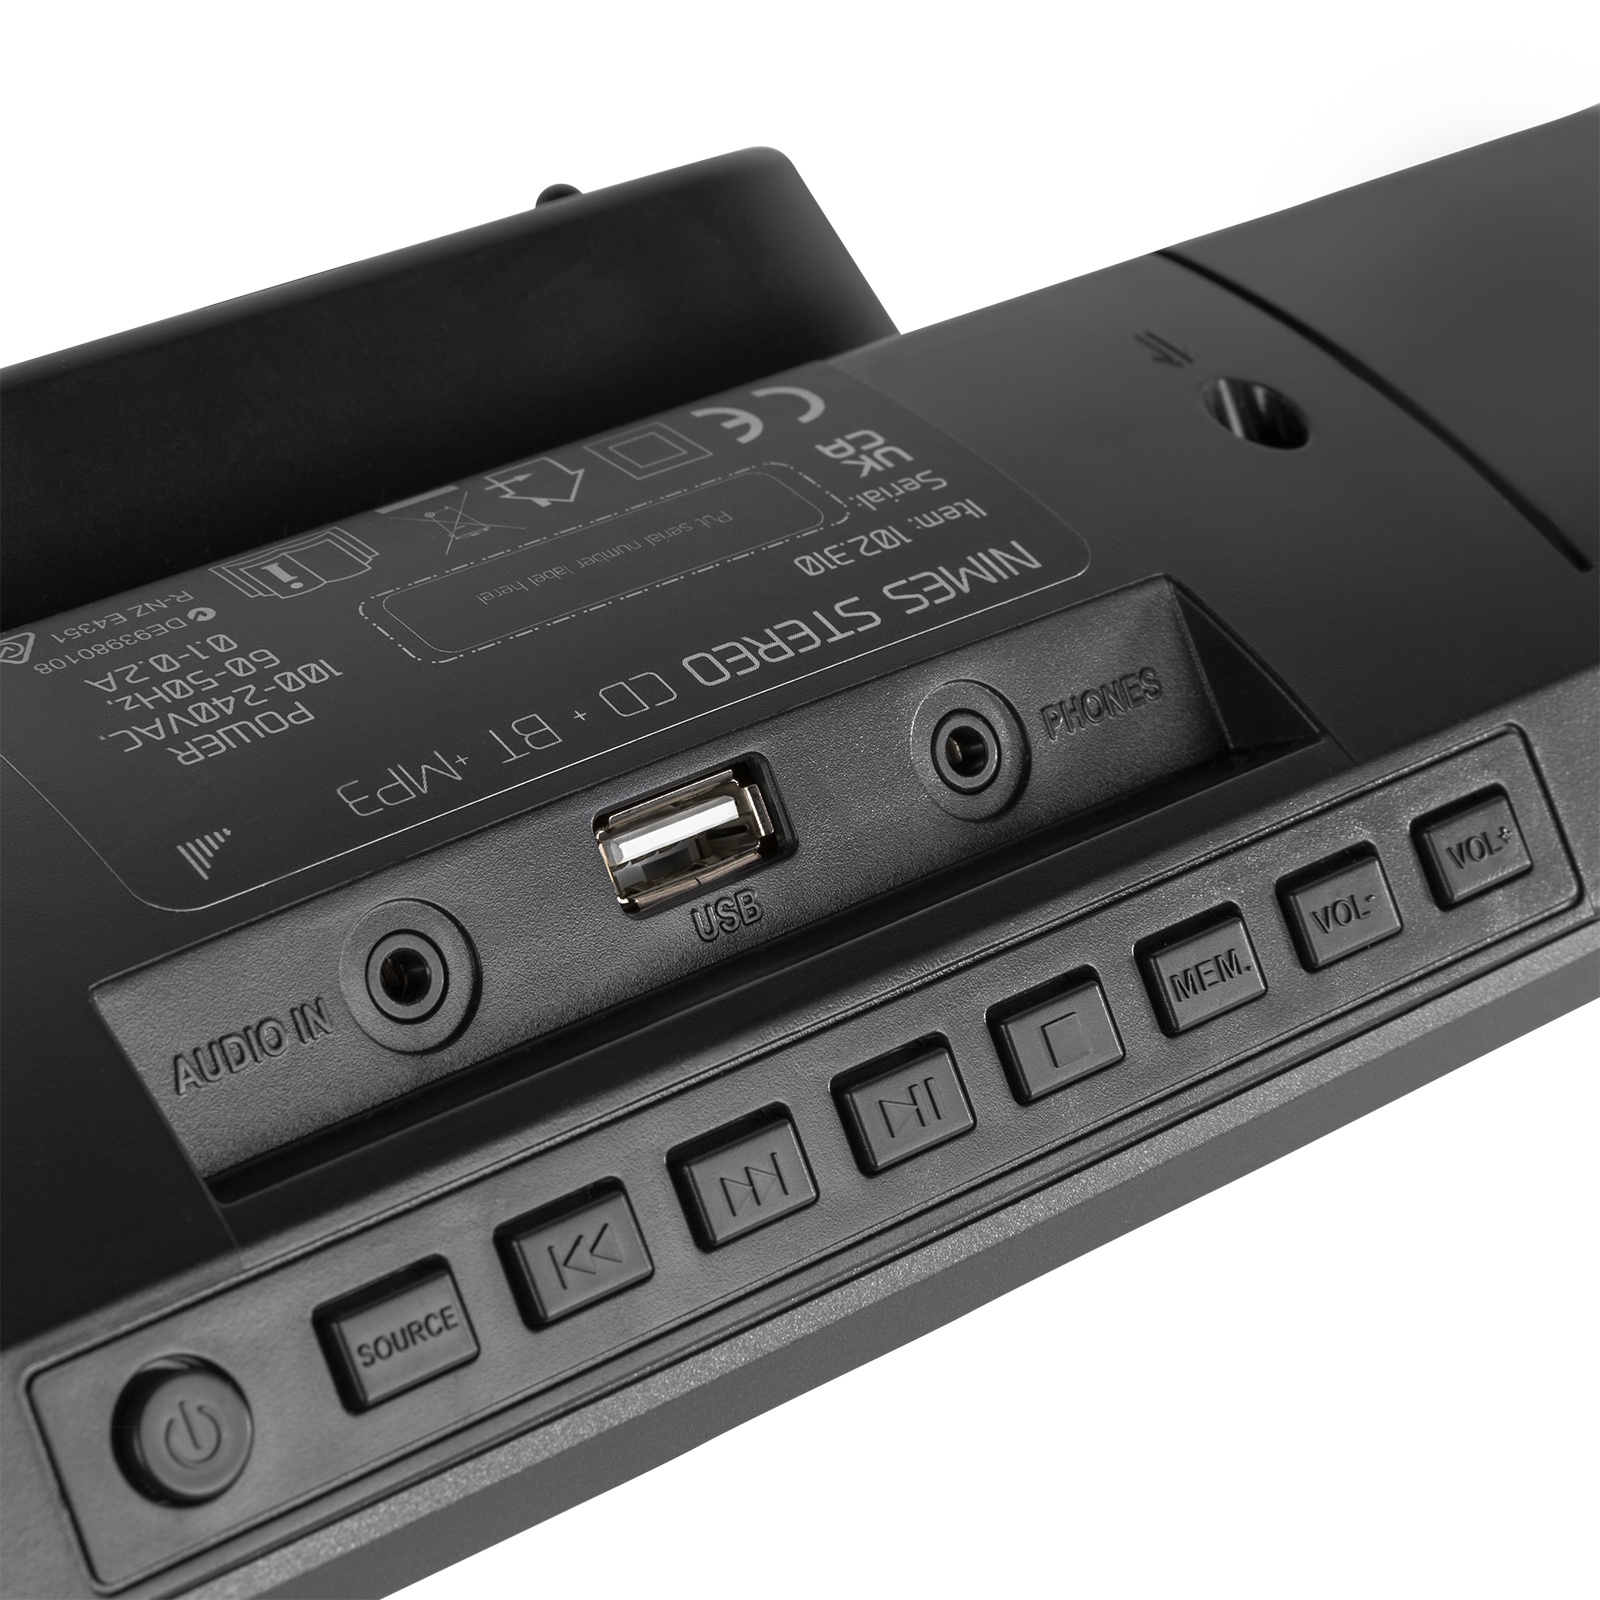 Miniwieża HIFI Nimes CD tuner FM BT USB czarna